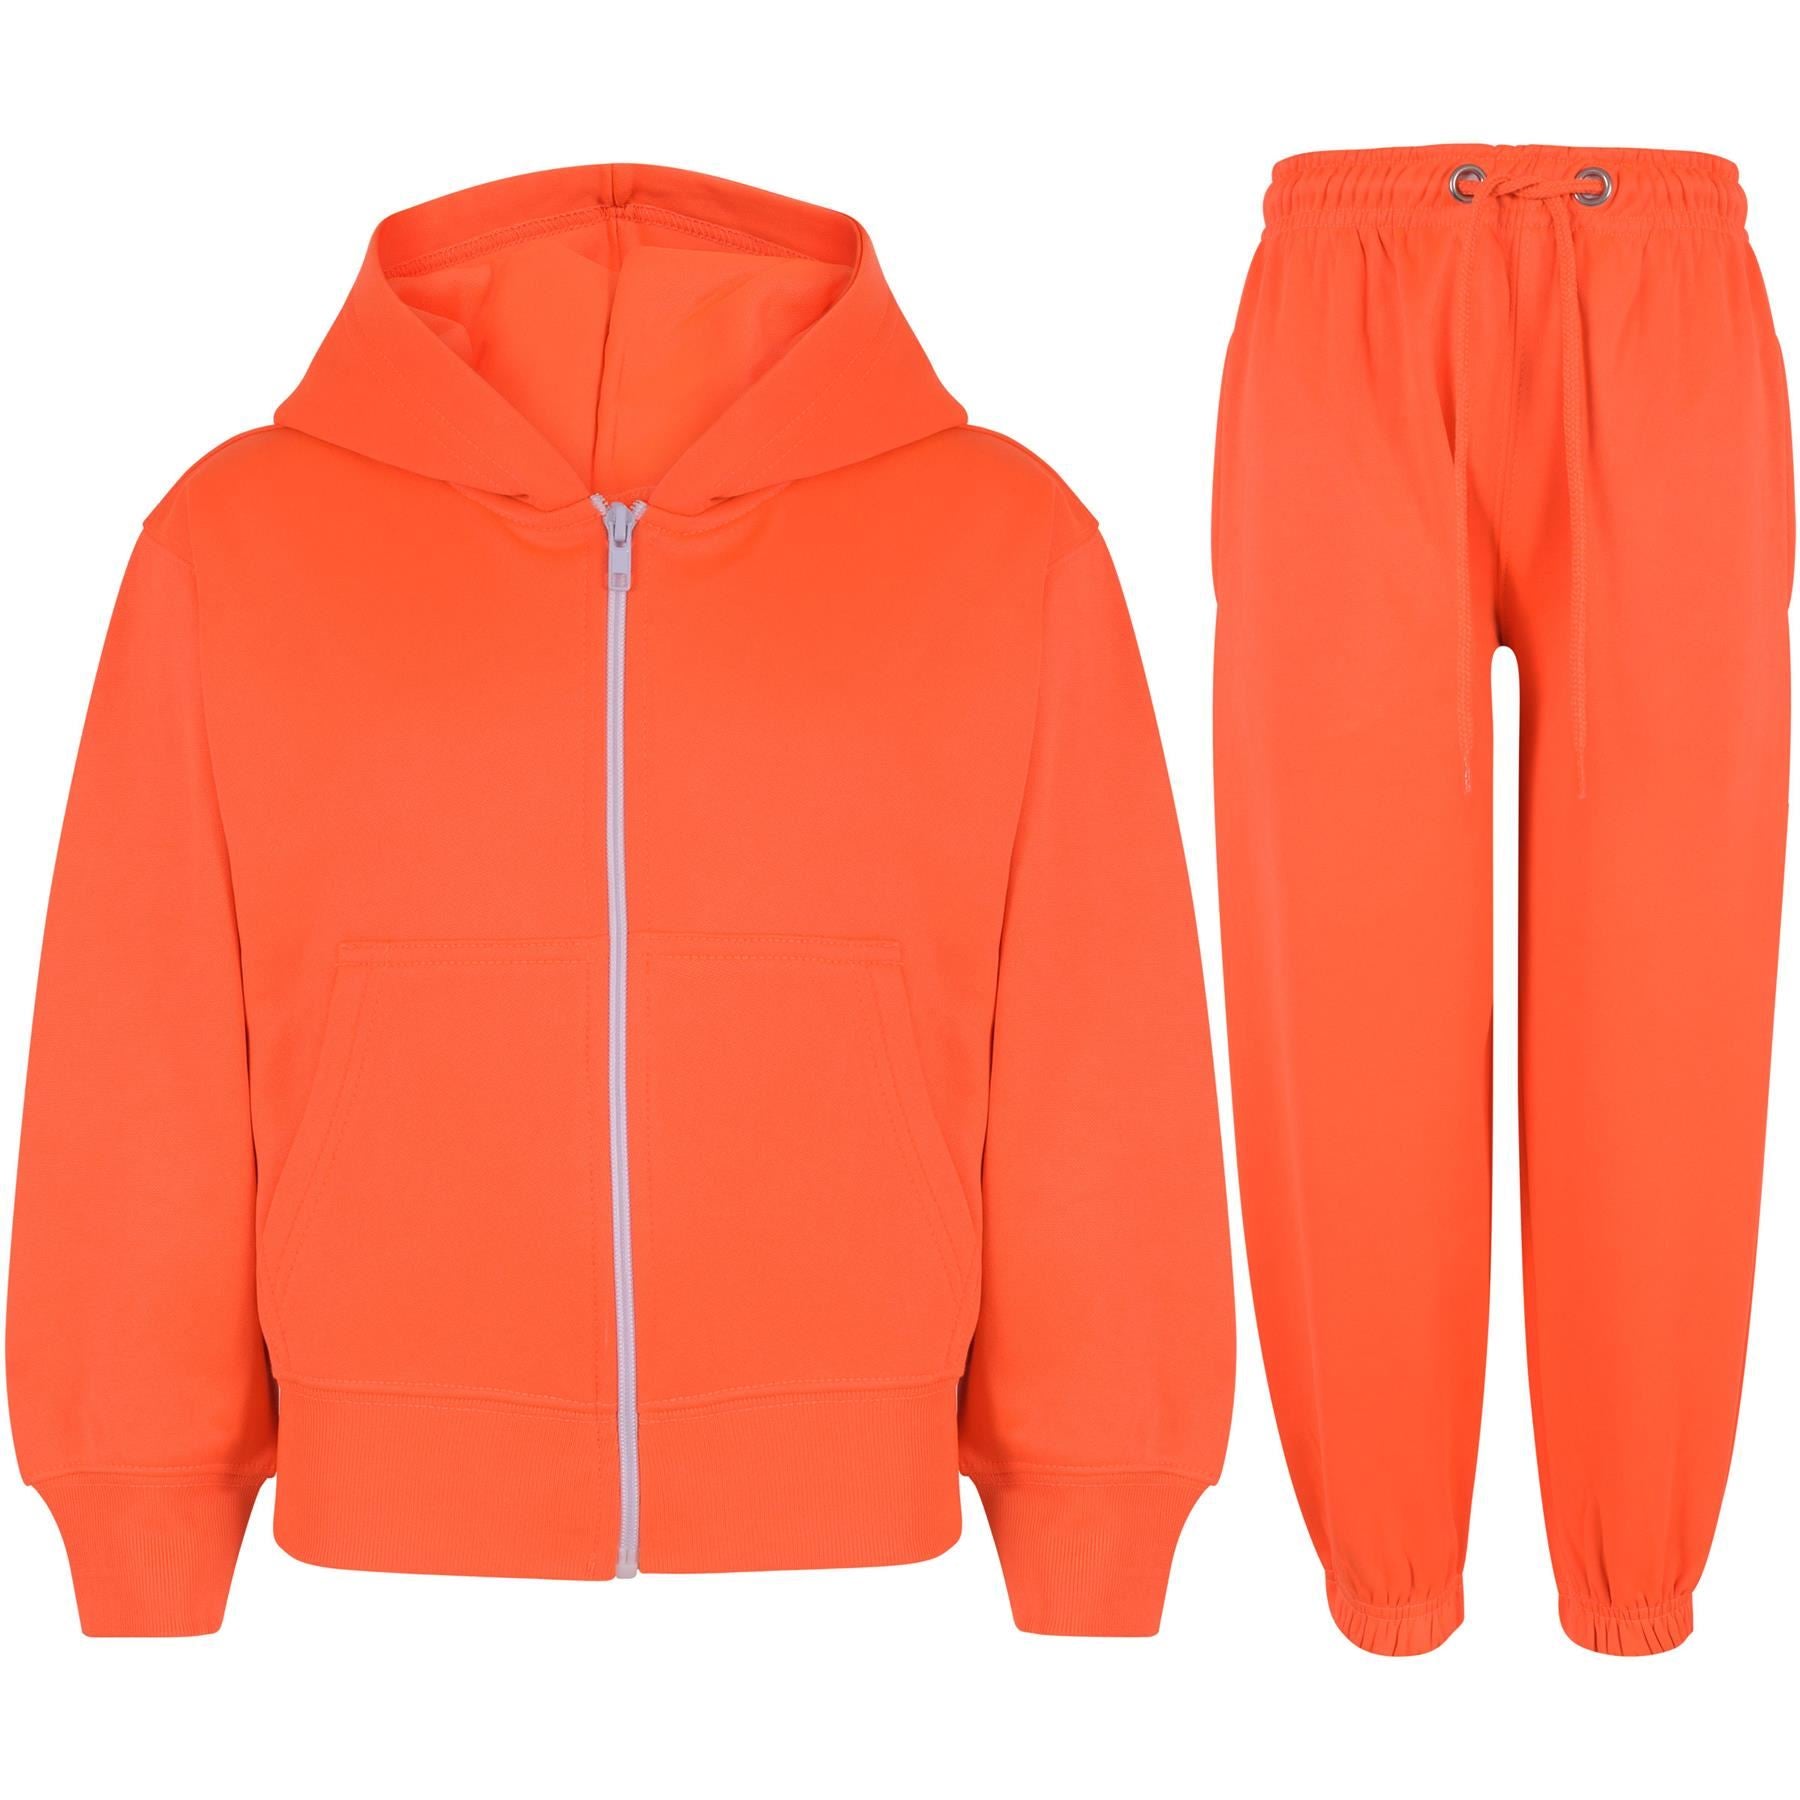 Kids Unisex Plain Hooded Zipped Jogging Suit